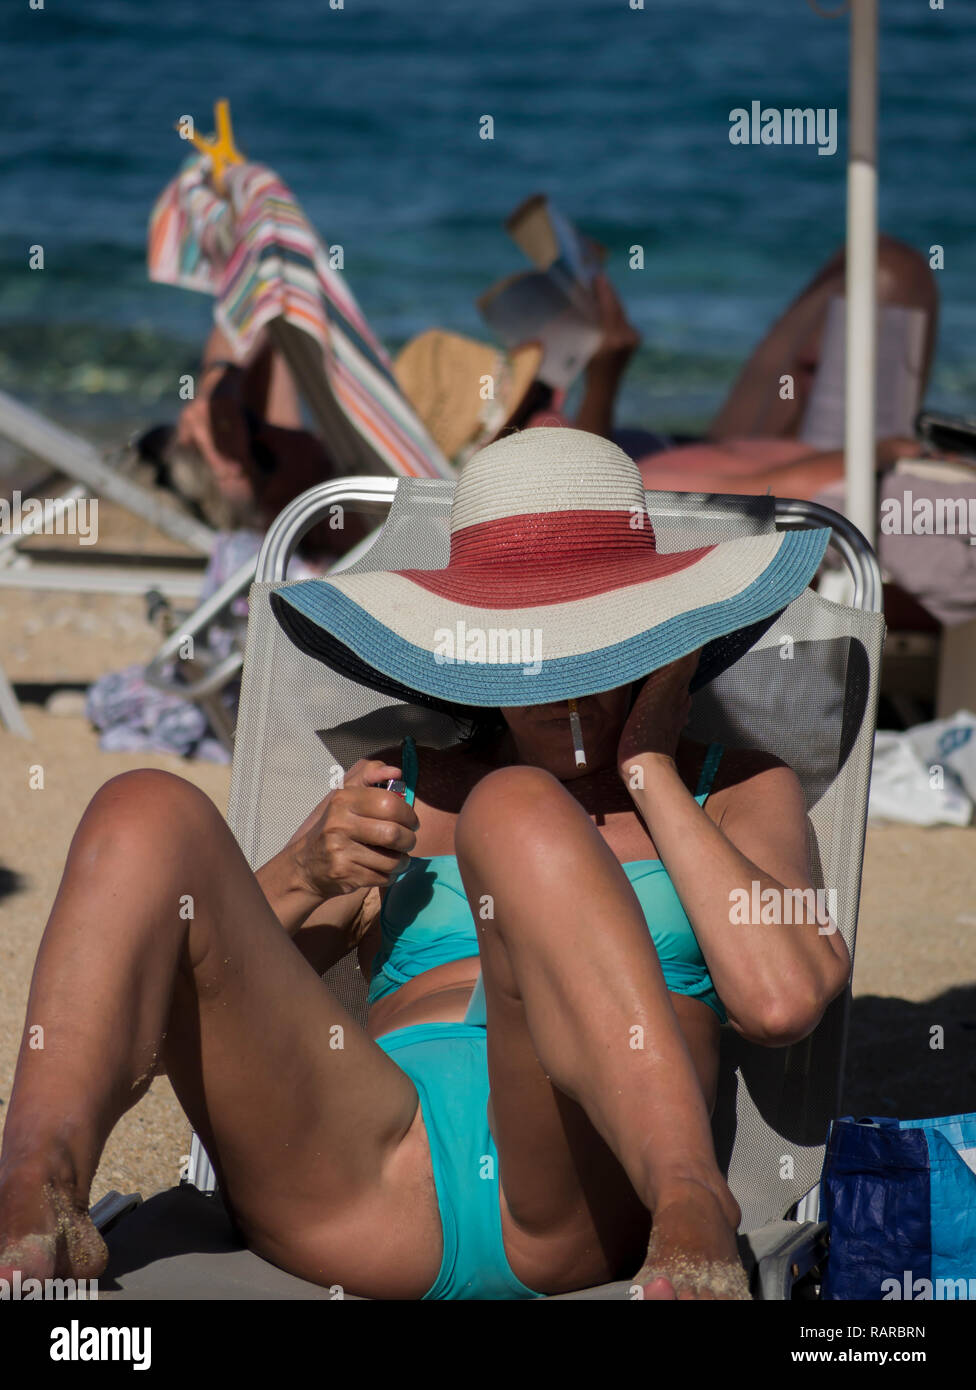 Woman on the beach wearing stylish hat smoking a cigarette Stock Photo